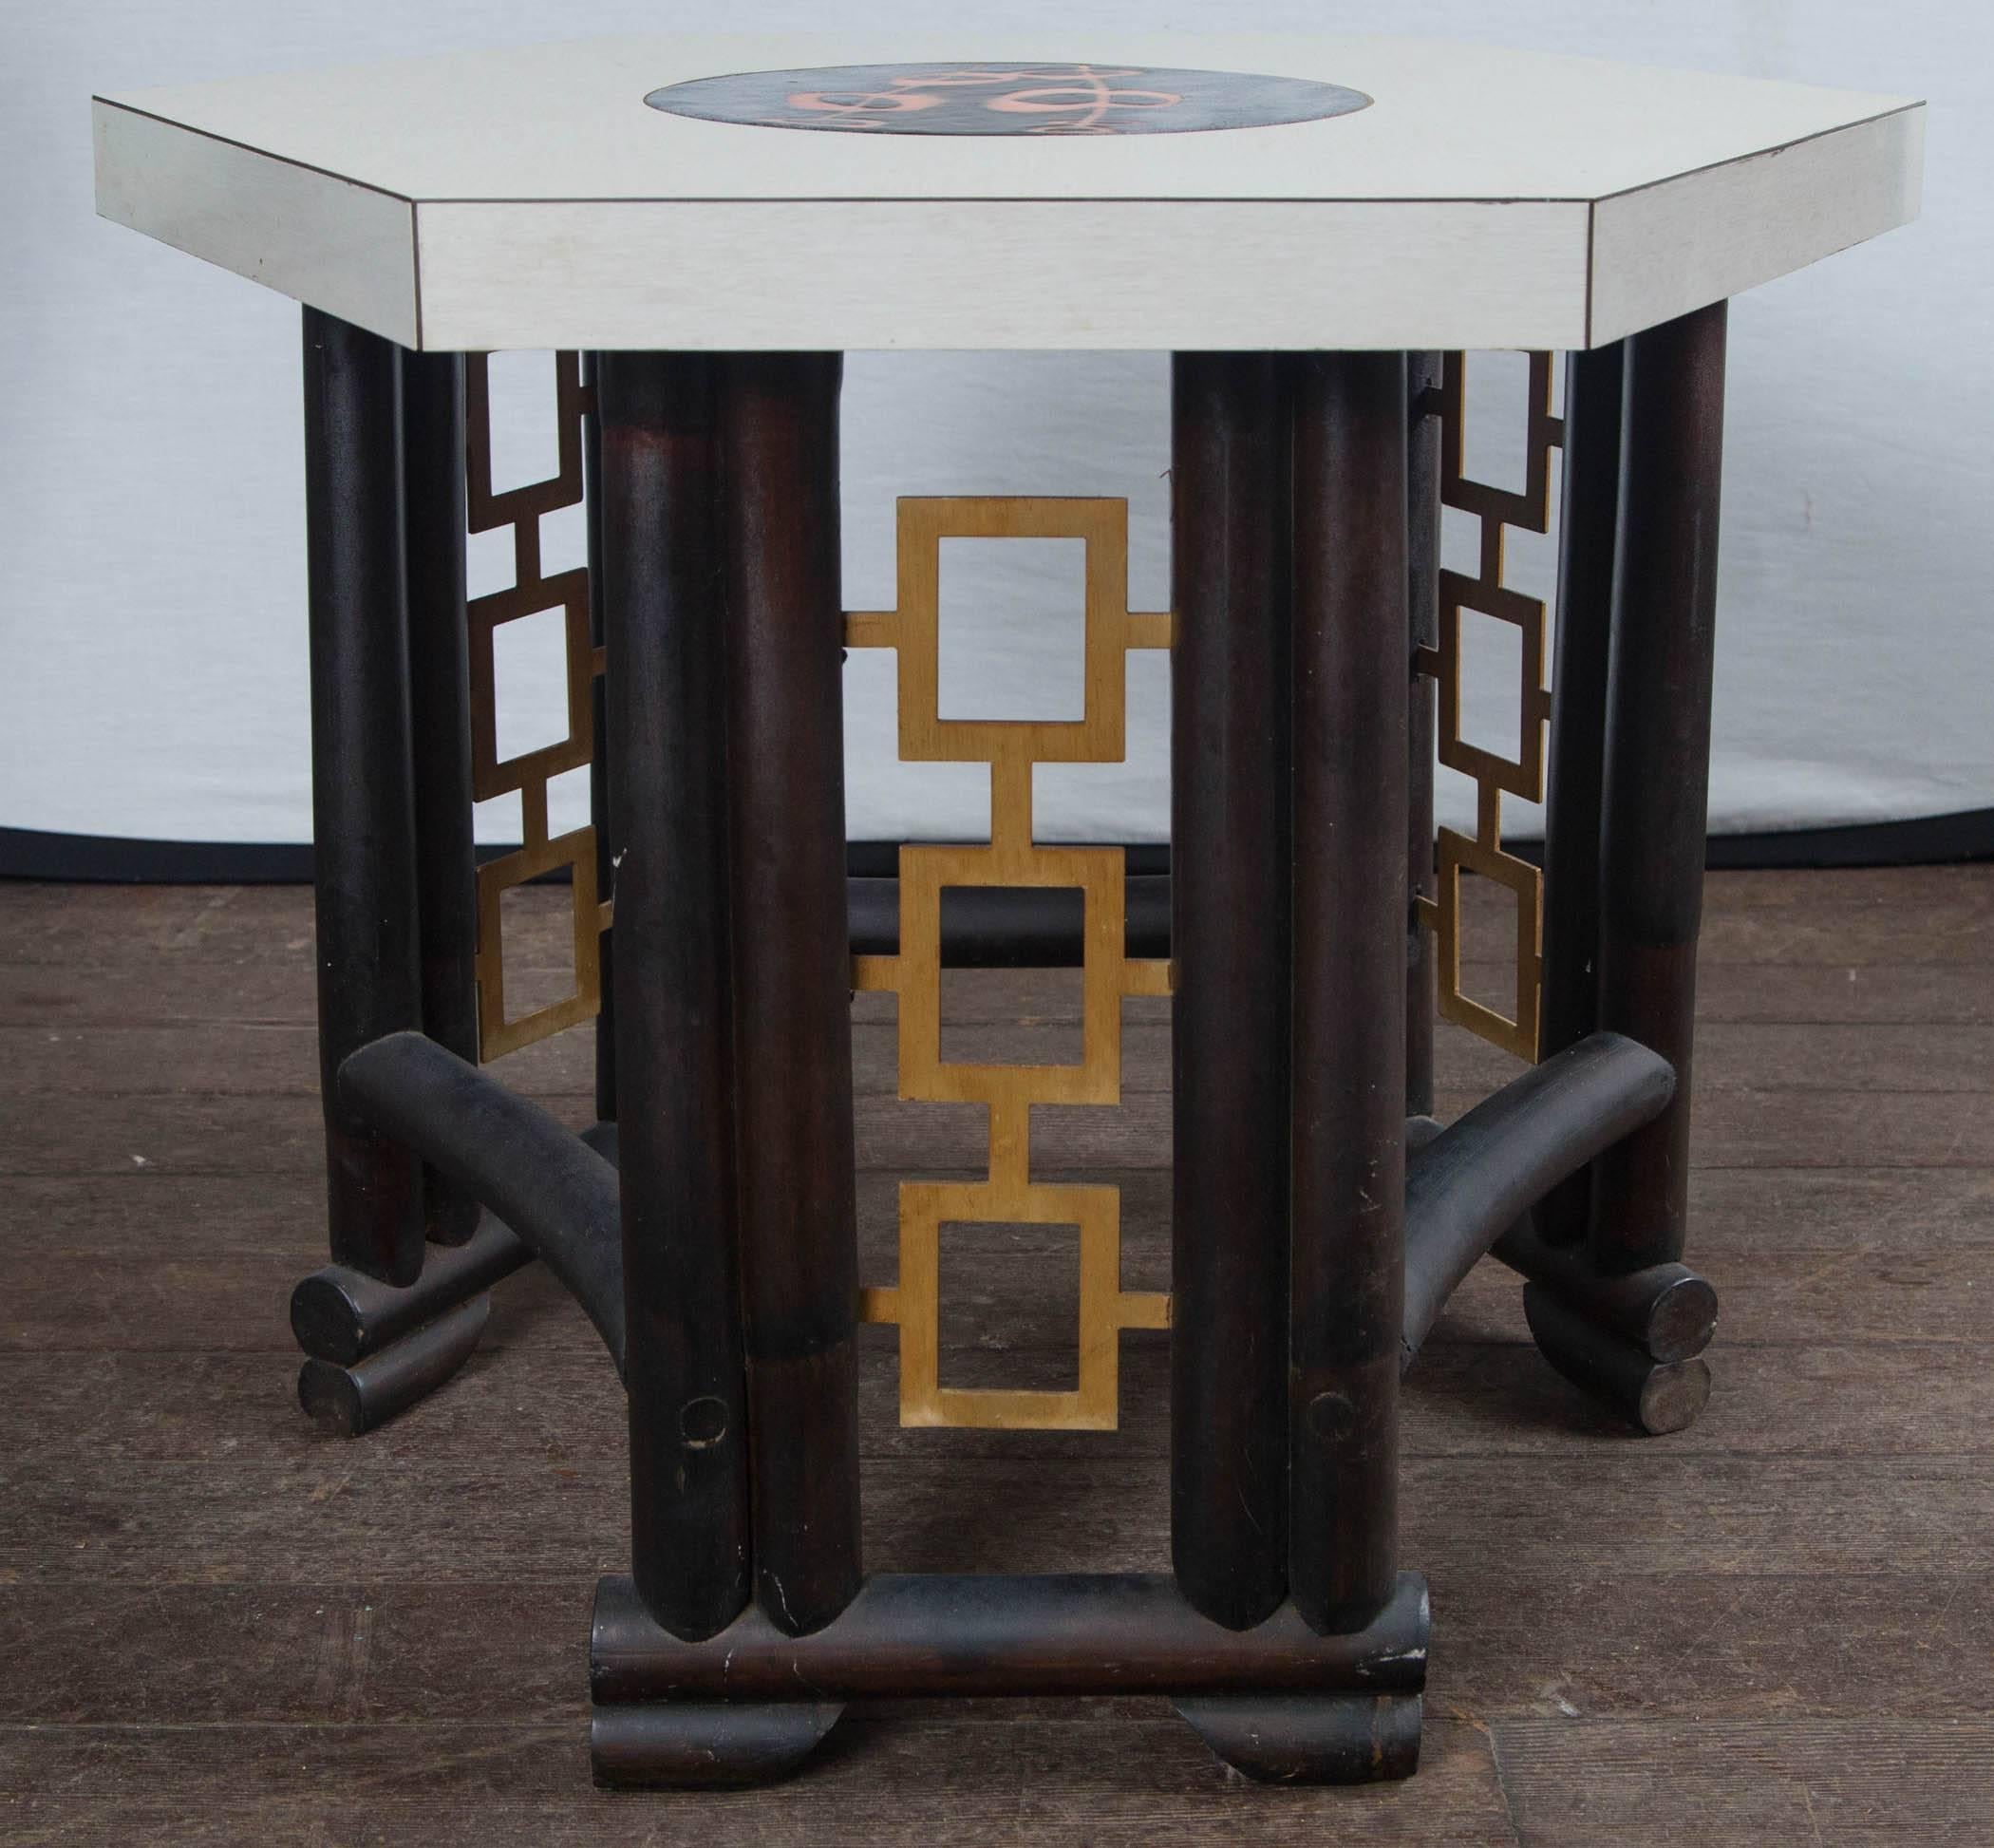 Table en bois de style bambou asiatique, fabriquée sur mesure, plateau stratifié avec pièce ronde émaillée incrustée au centre. Motif géométrique en métal doré sur la base. Très chic !